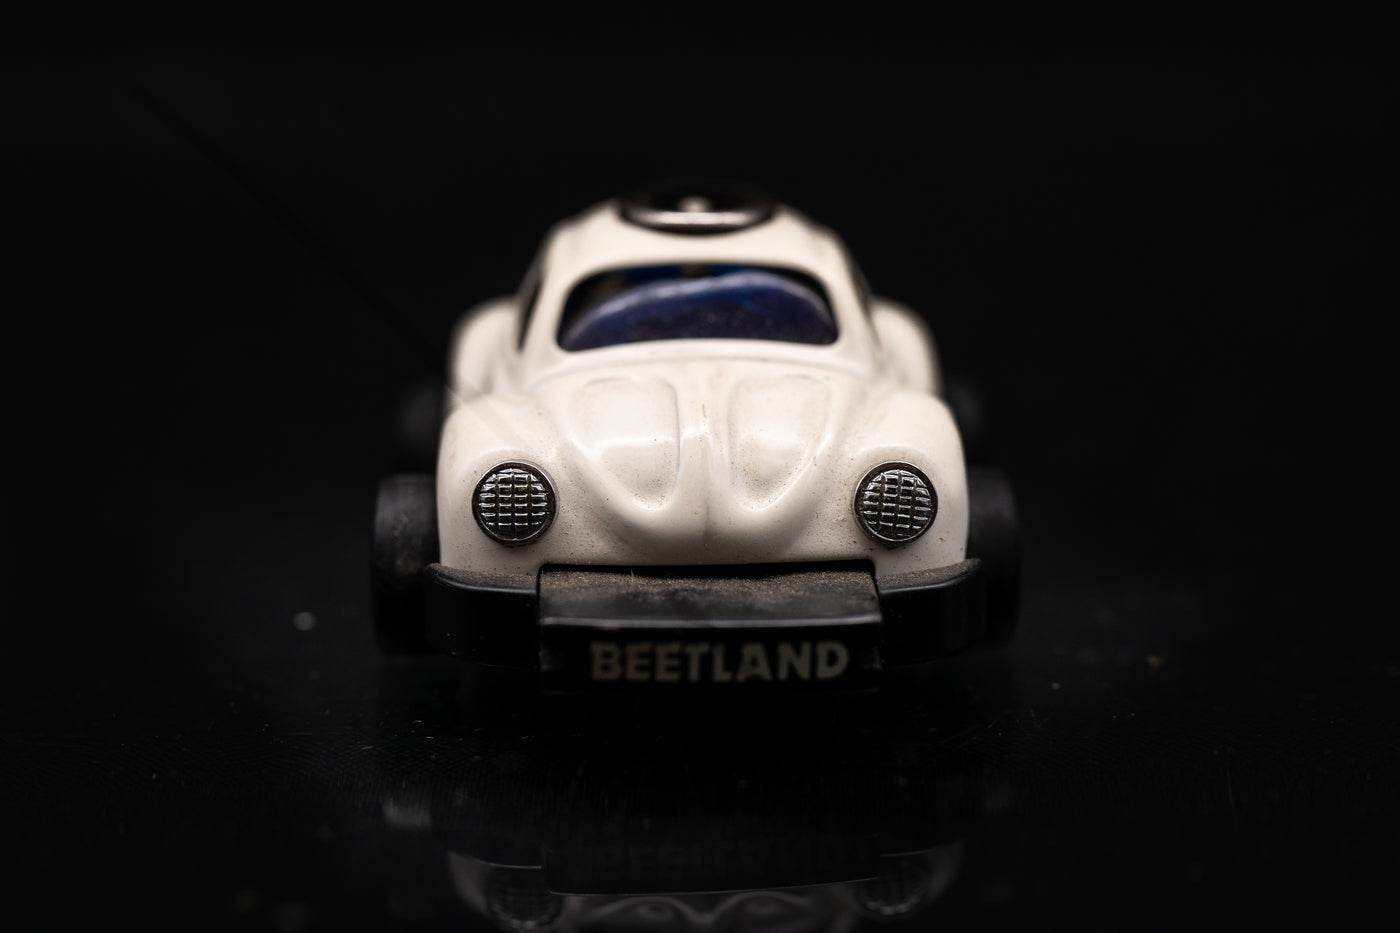 Vintage Beetland VW Beetle Miniature Lighter